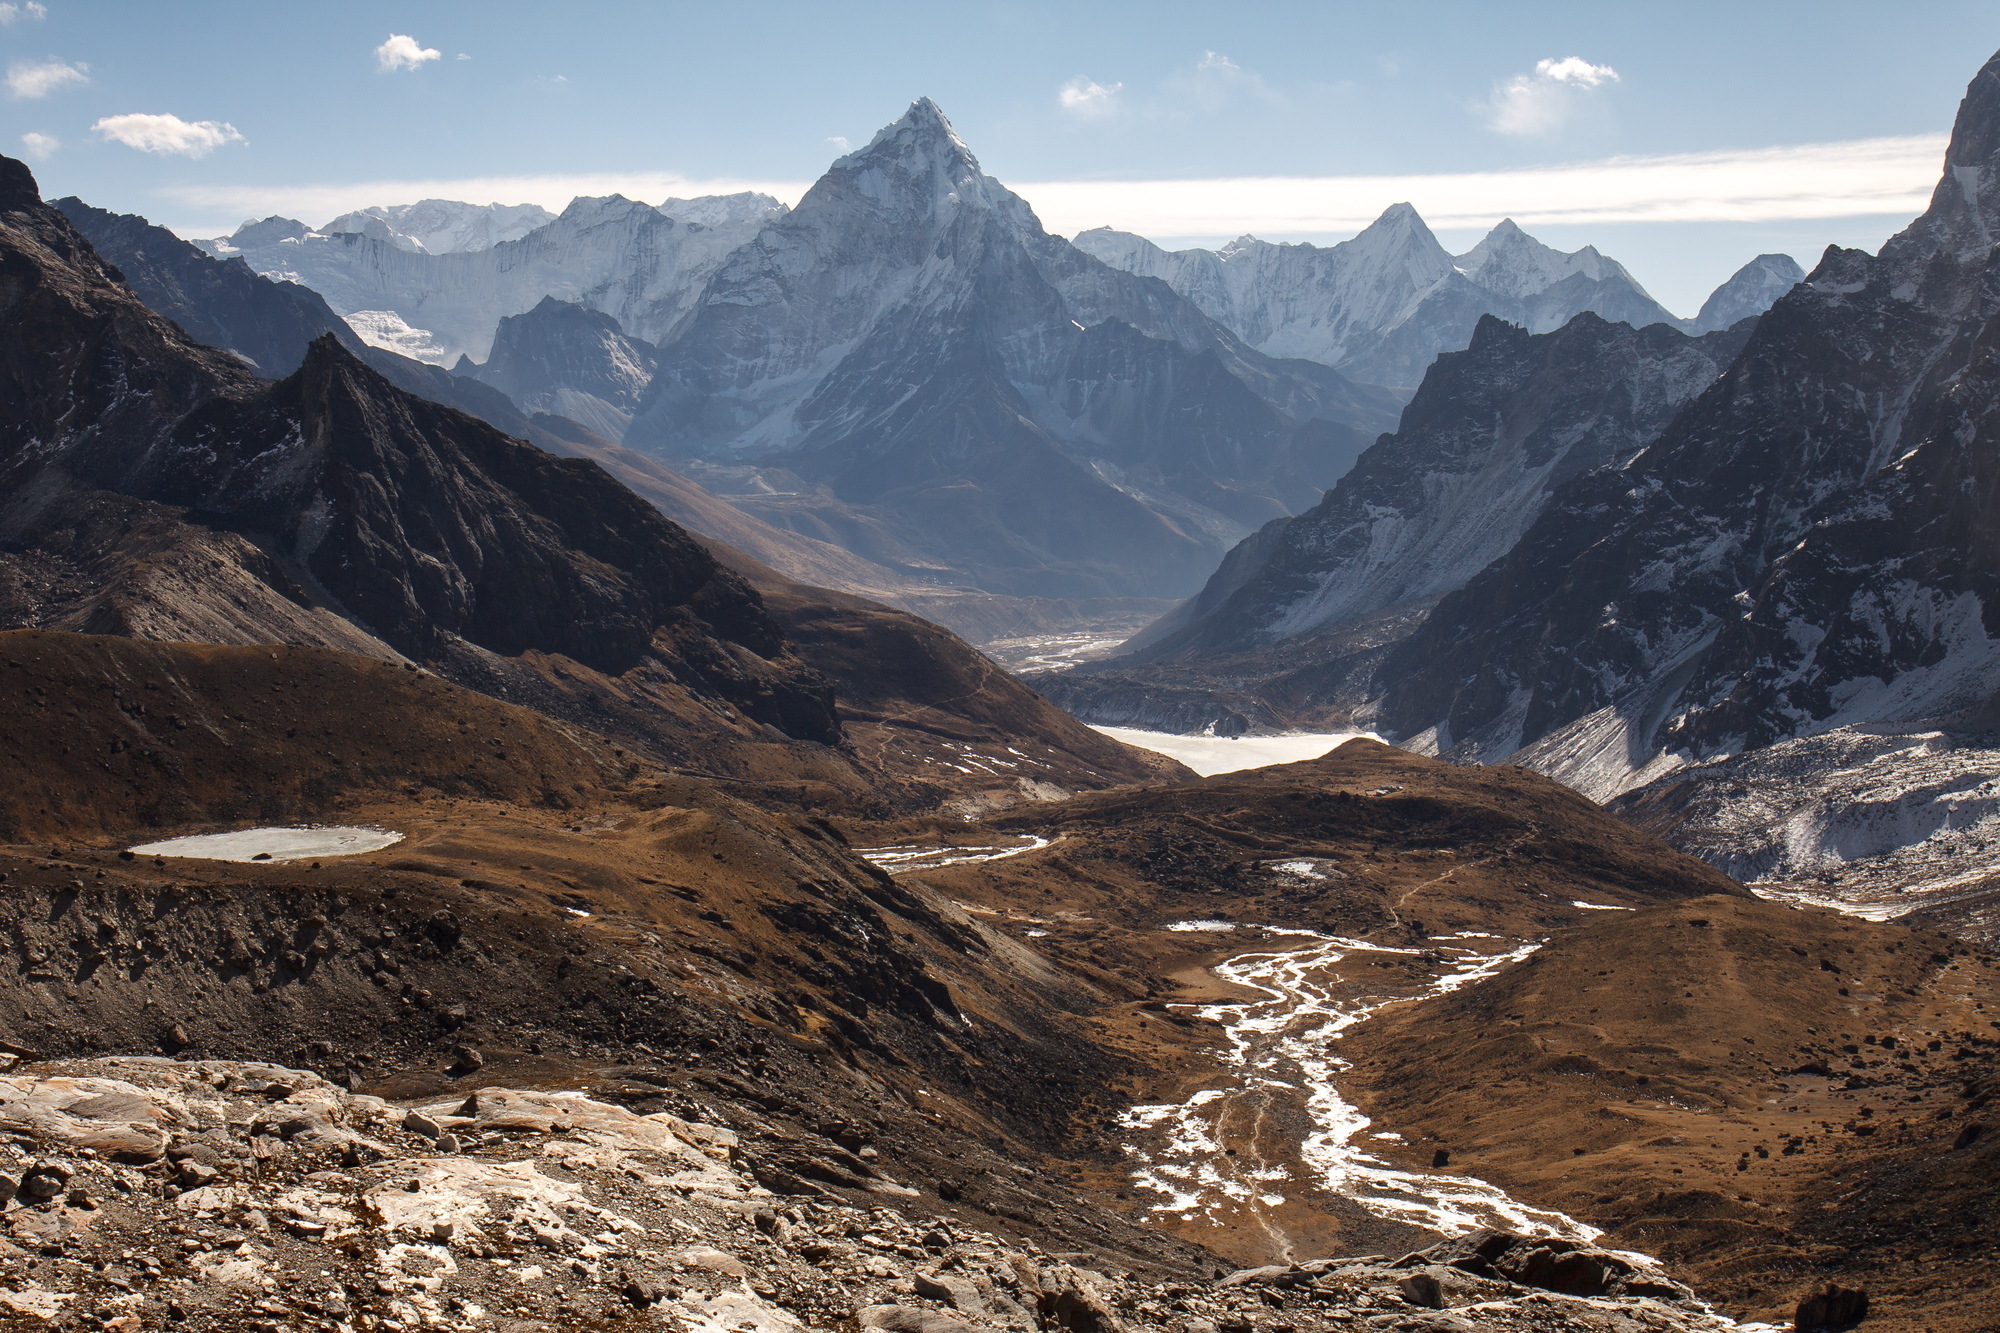 Dzonglha, Everest region, Nepal - By Mountain People